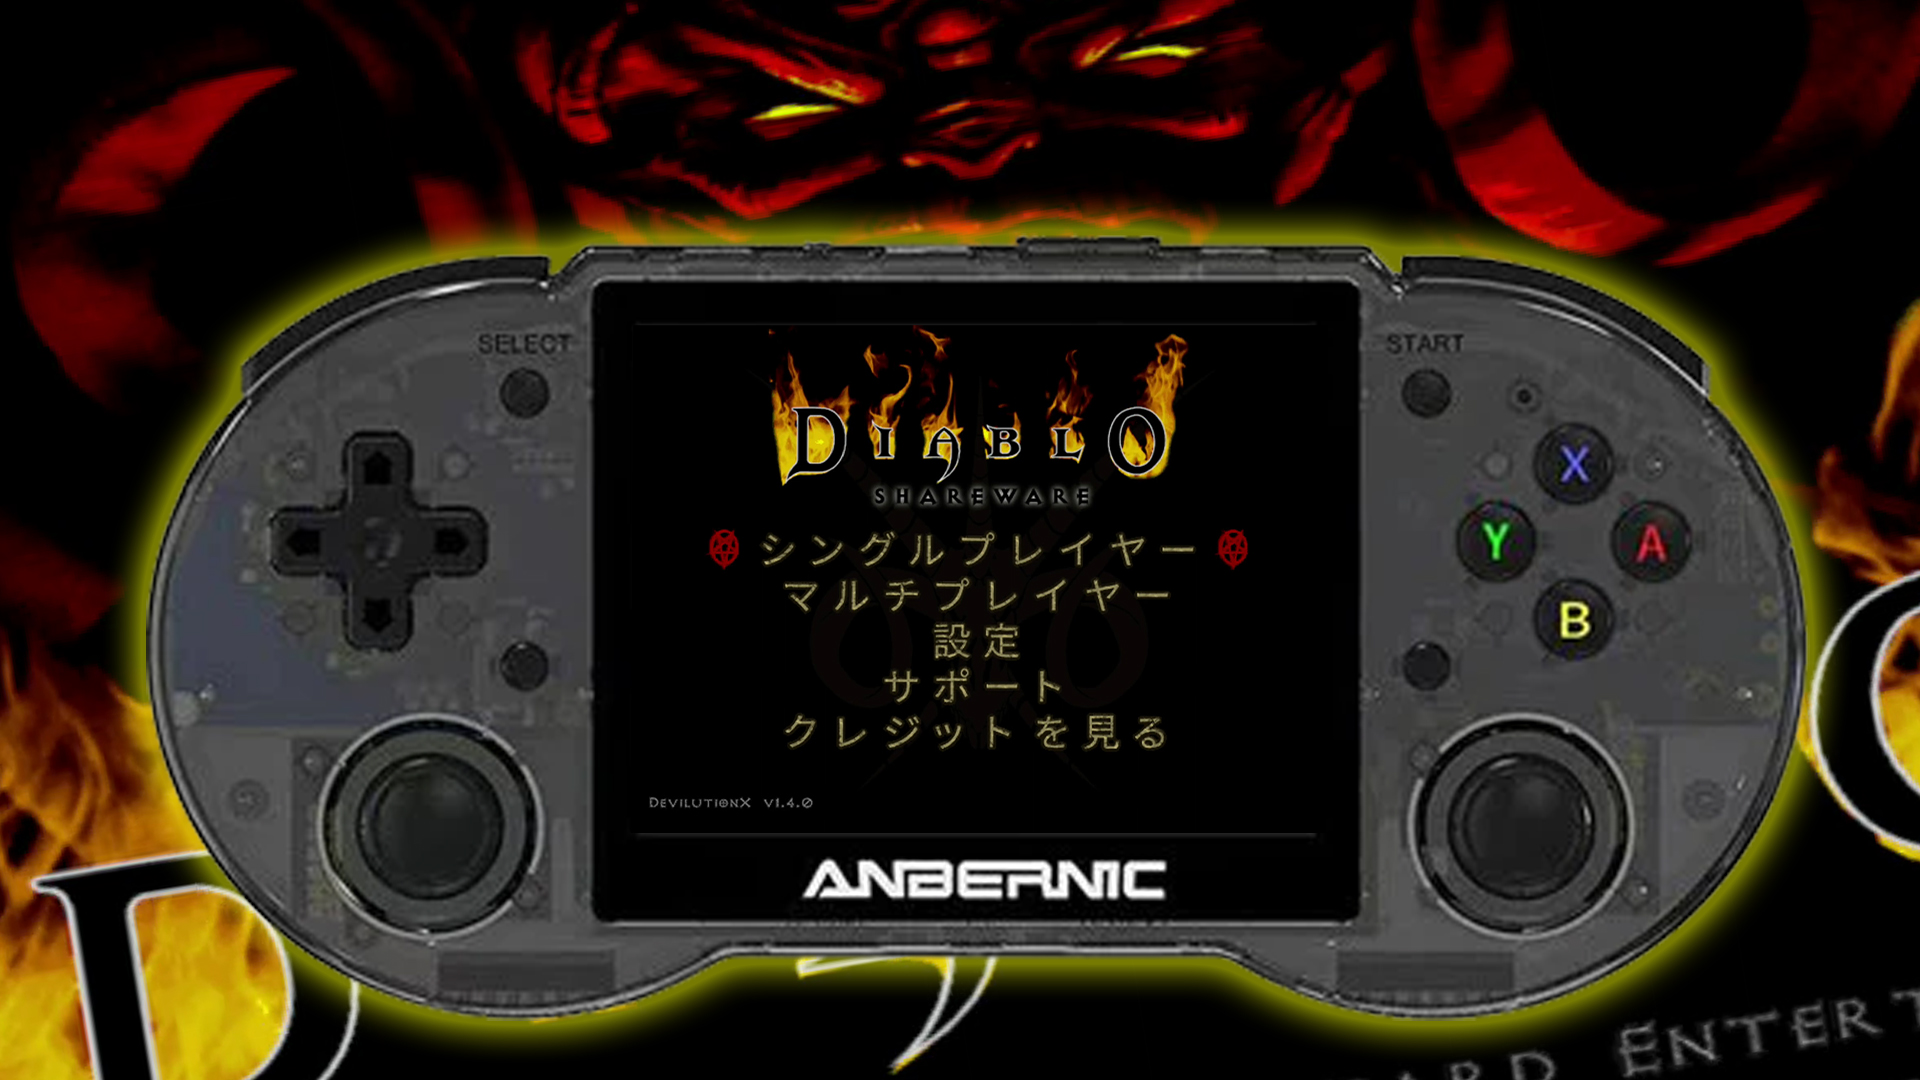 なんと幻の日本語化にも対応!? PC版初代『ディアブロ』をRG353Pに入れ 